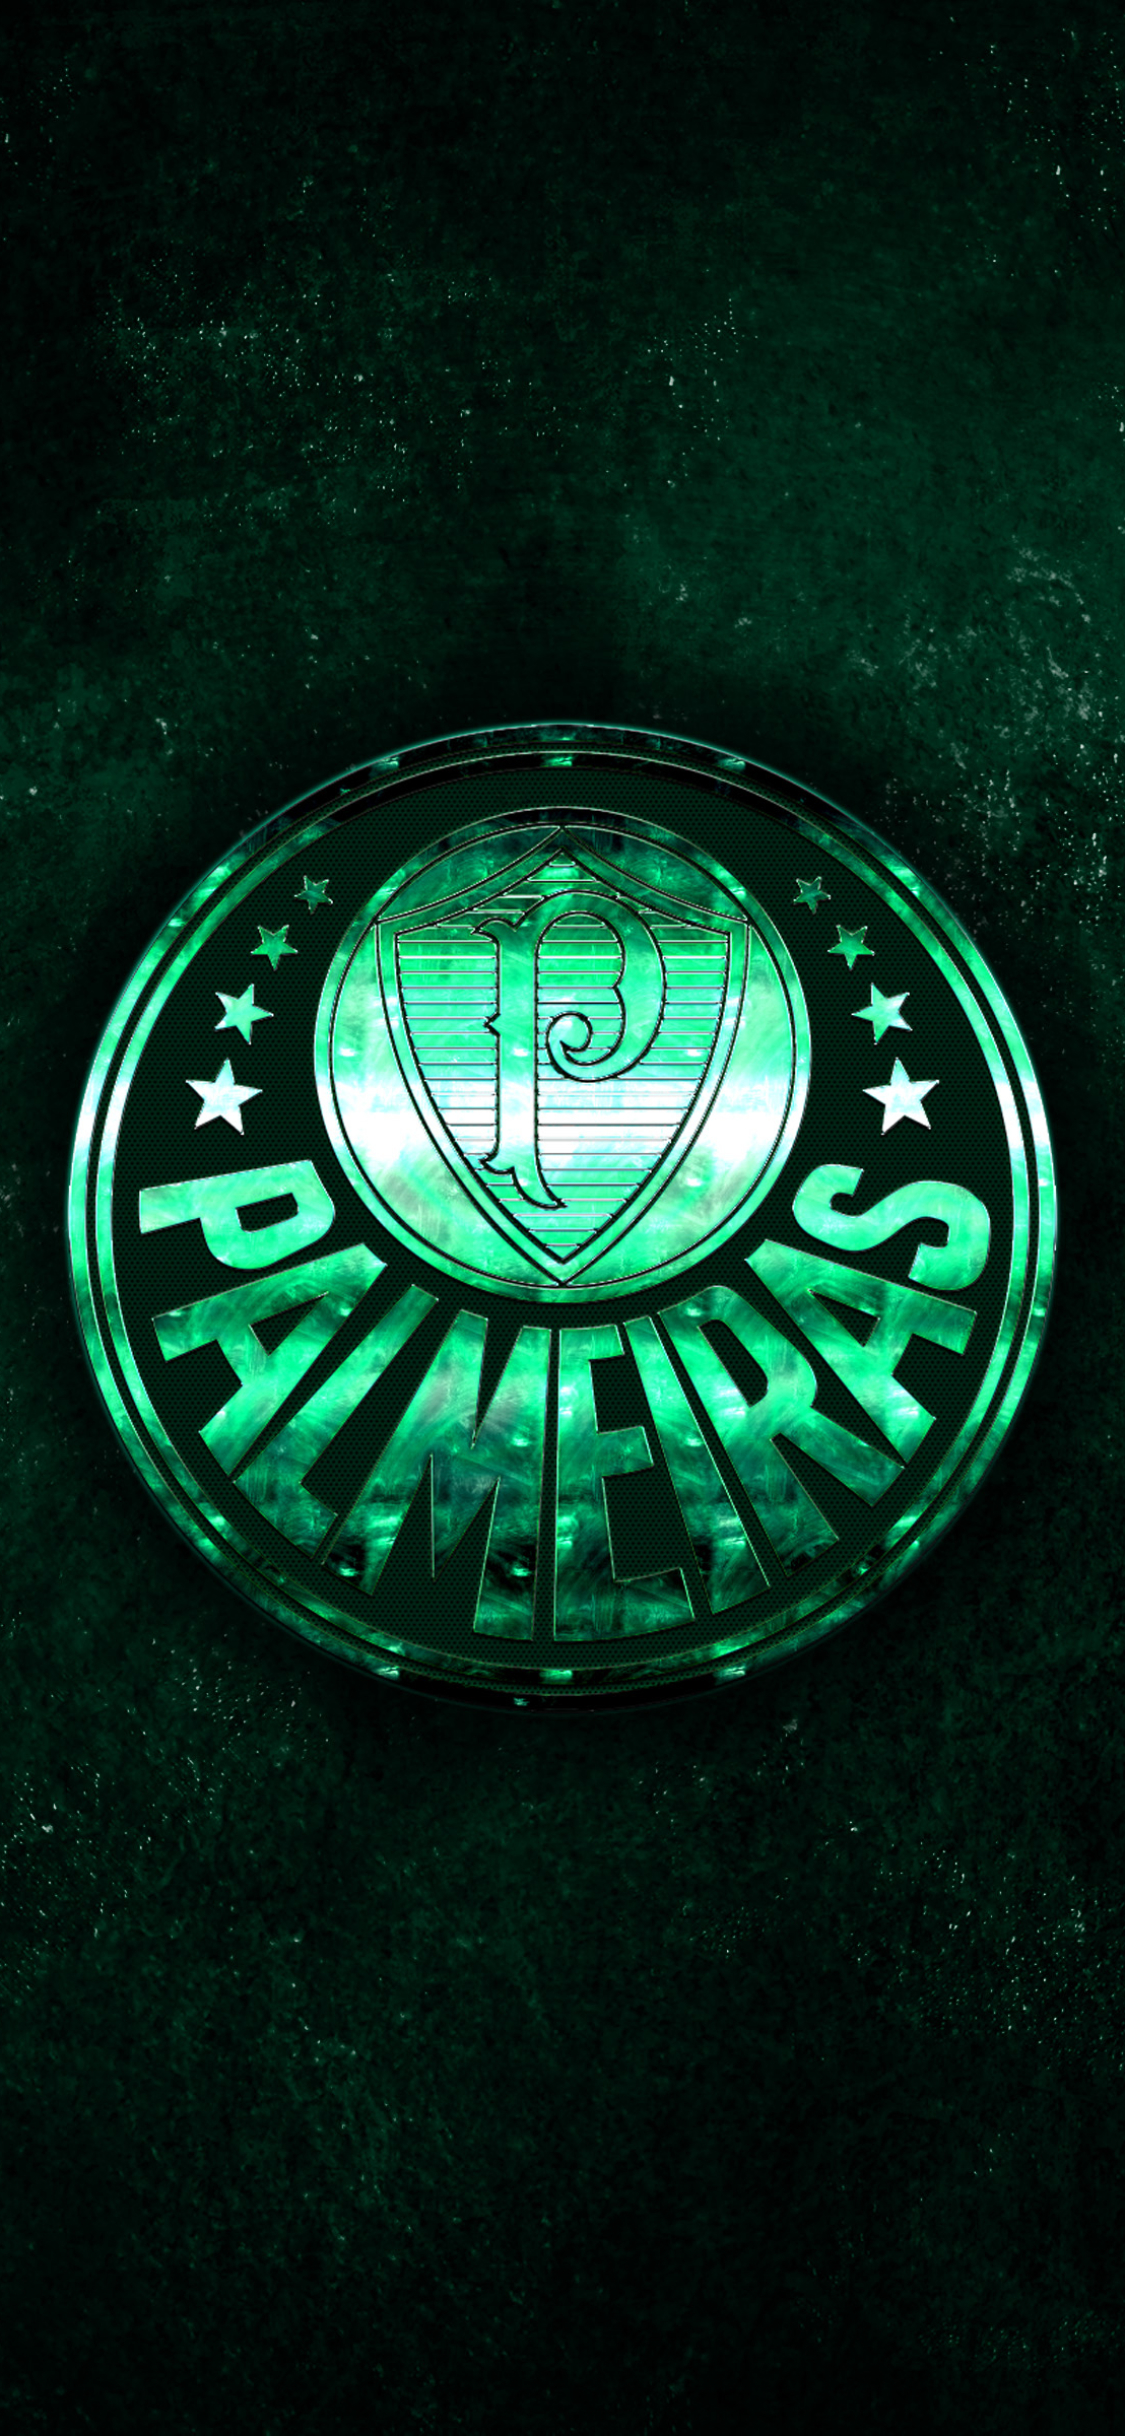 Descarga gratuita de fondo de pantalla para móvil de Fútbol, Logo, Emblema, Deporte, Sociedade Esportiva Palmeiras.